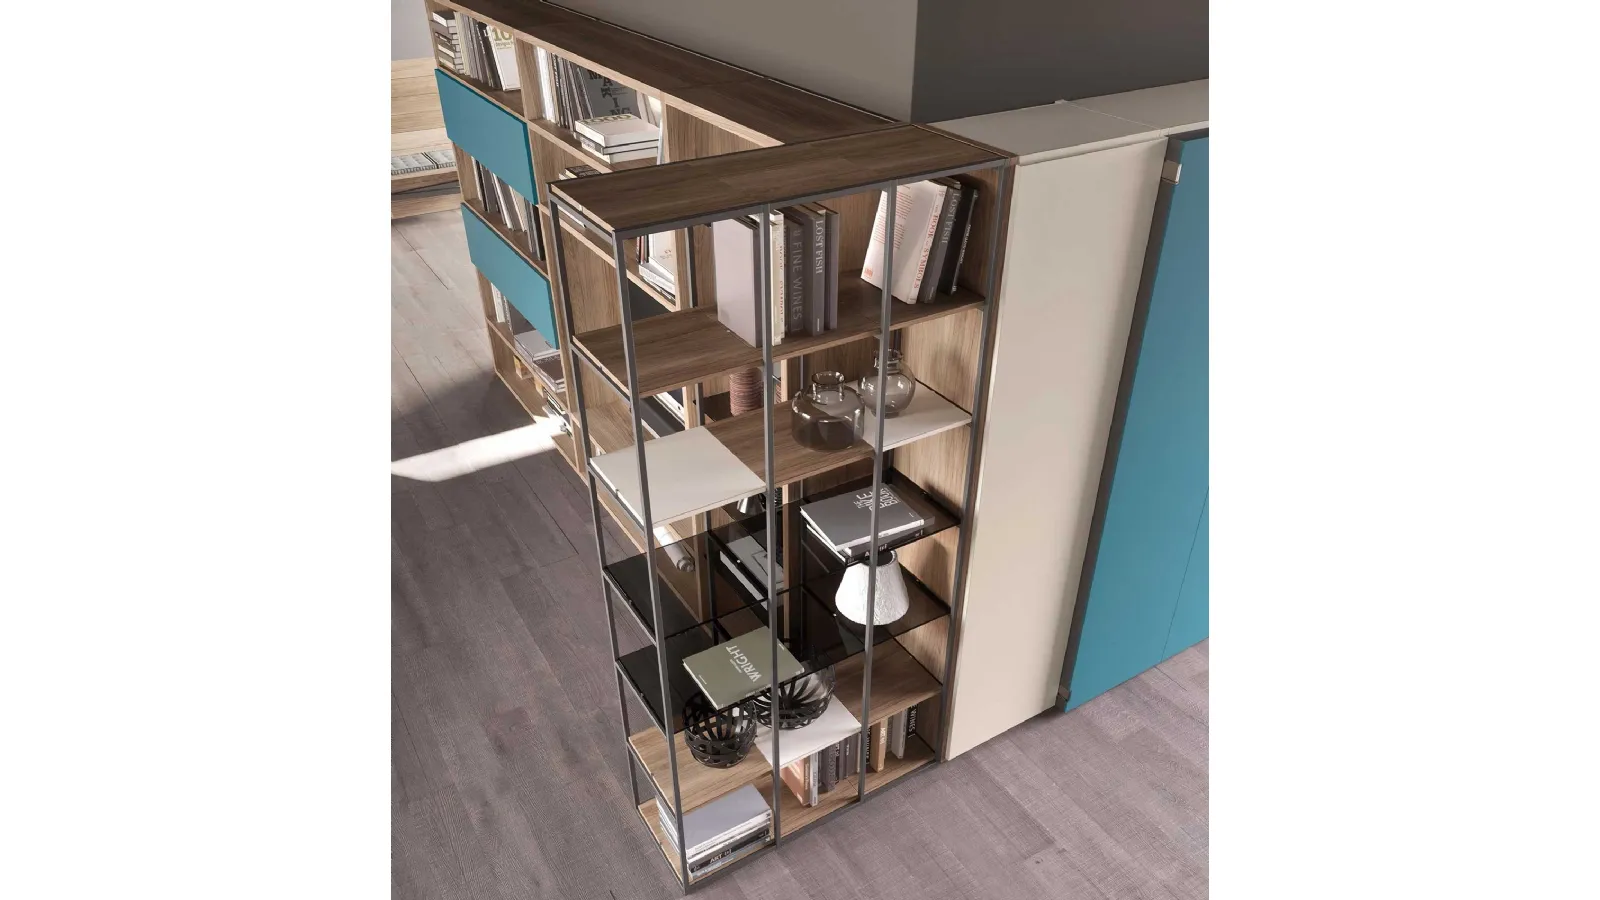 Libreria modulare in melaminico con ripiani in vetro fumè e essenza legno Babel di Mab